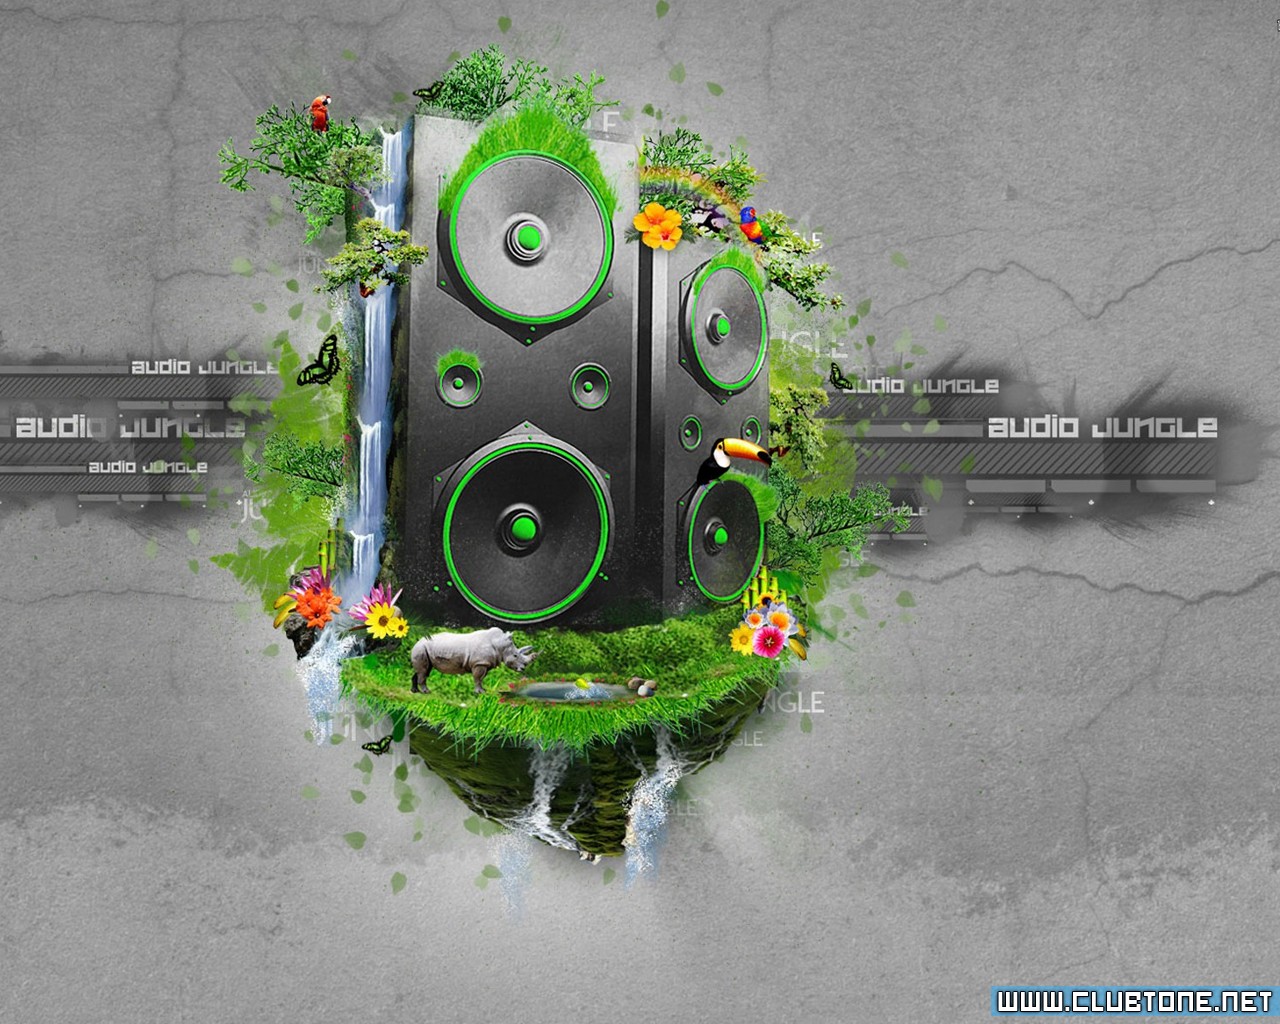 DJ Audio-Jungle  